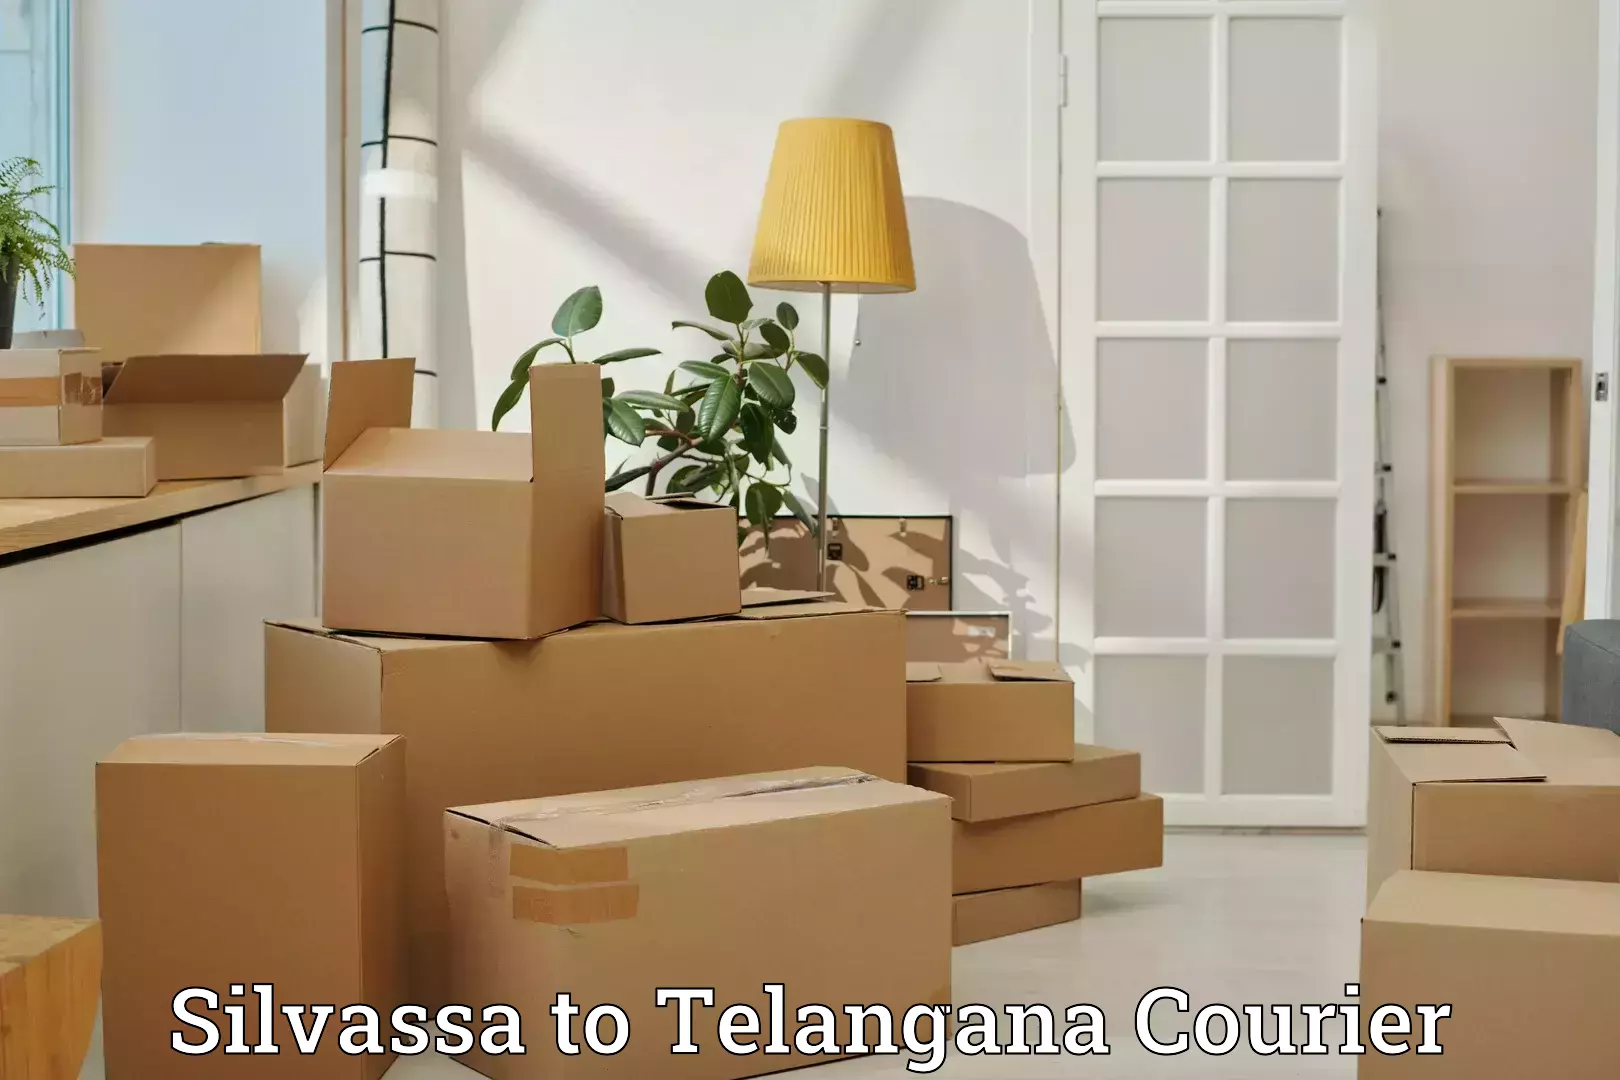 Door to door luggage delivery Silvassa to Gangadhara